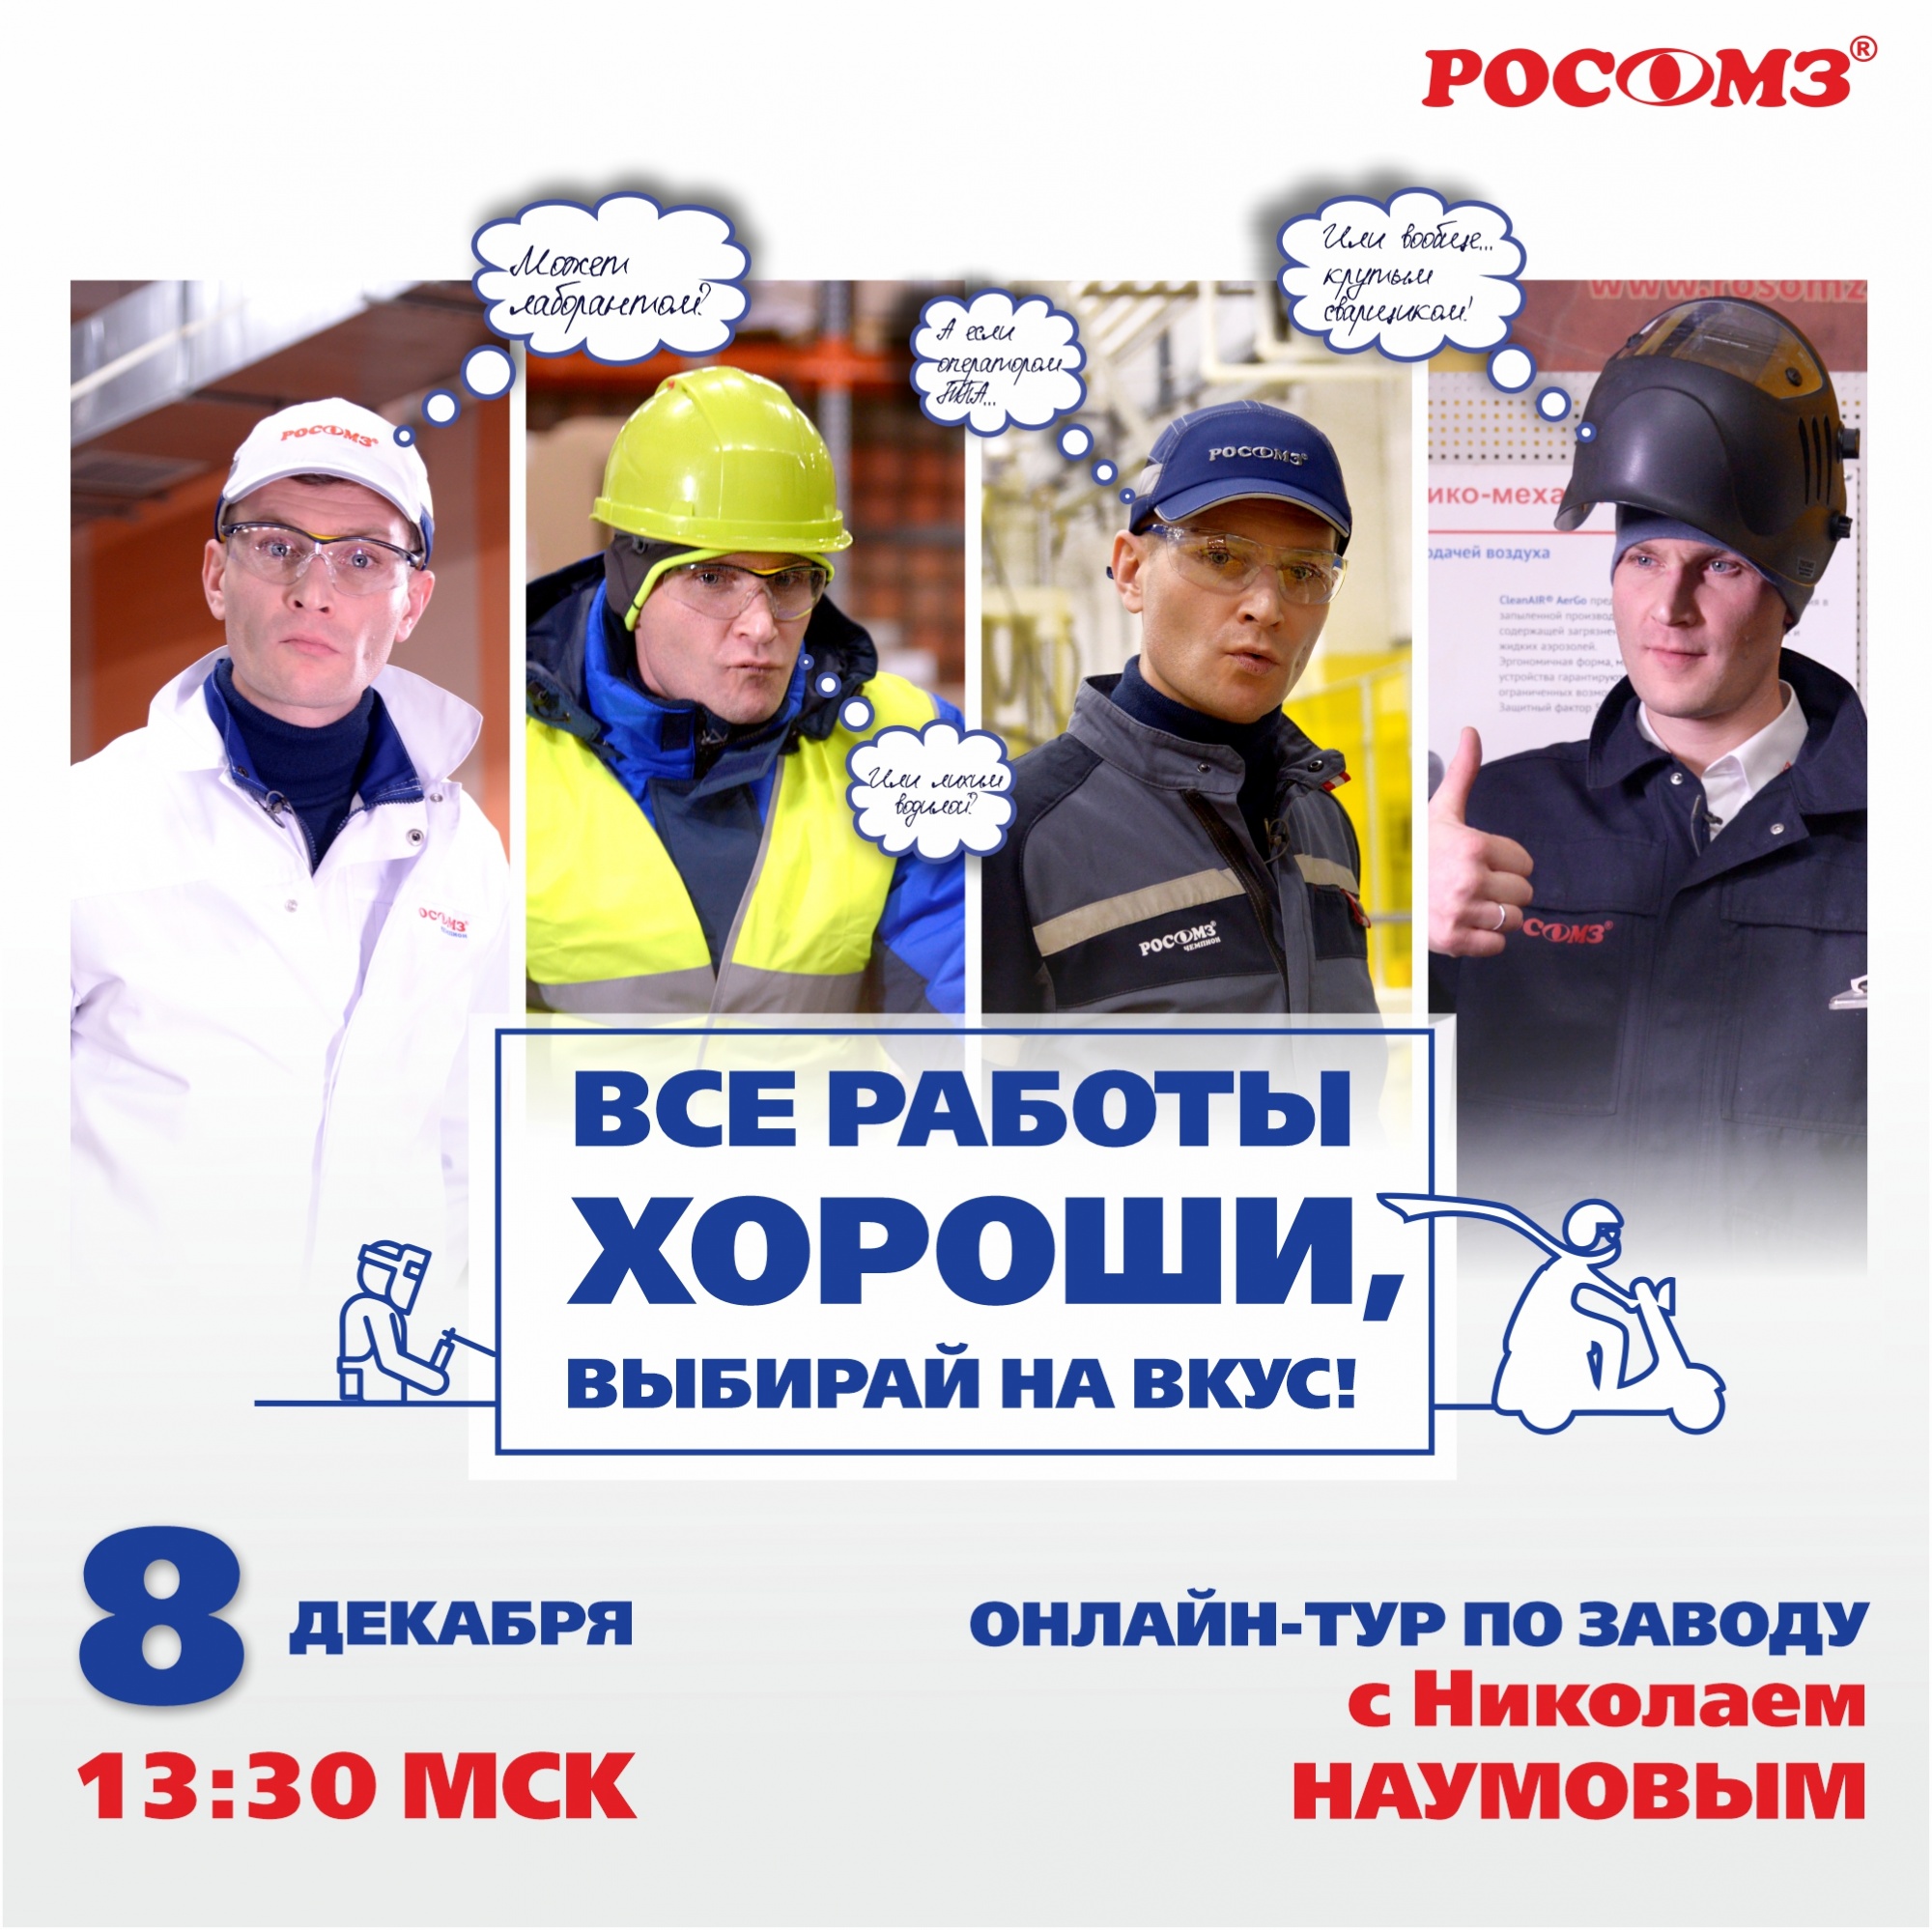 Онлайн-тур по заводу РОСОМЗ® с Николаем Наумовым